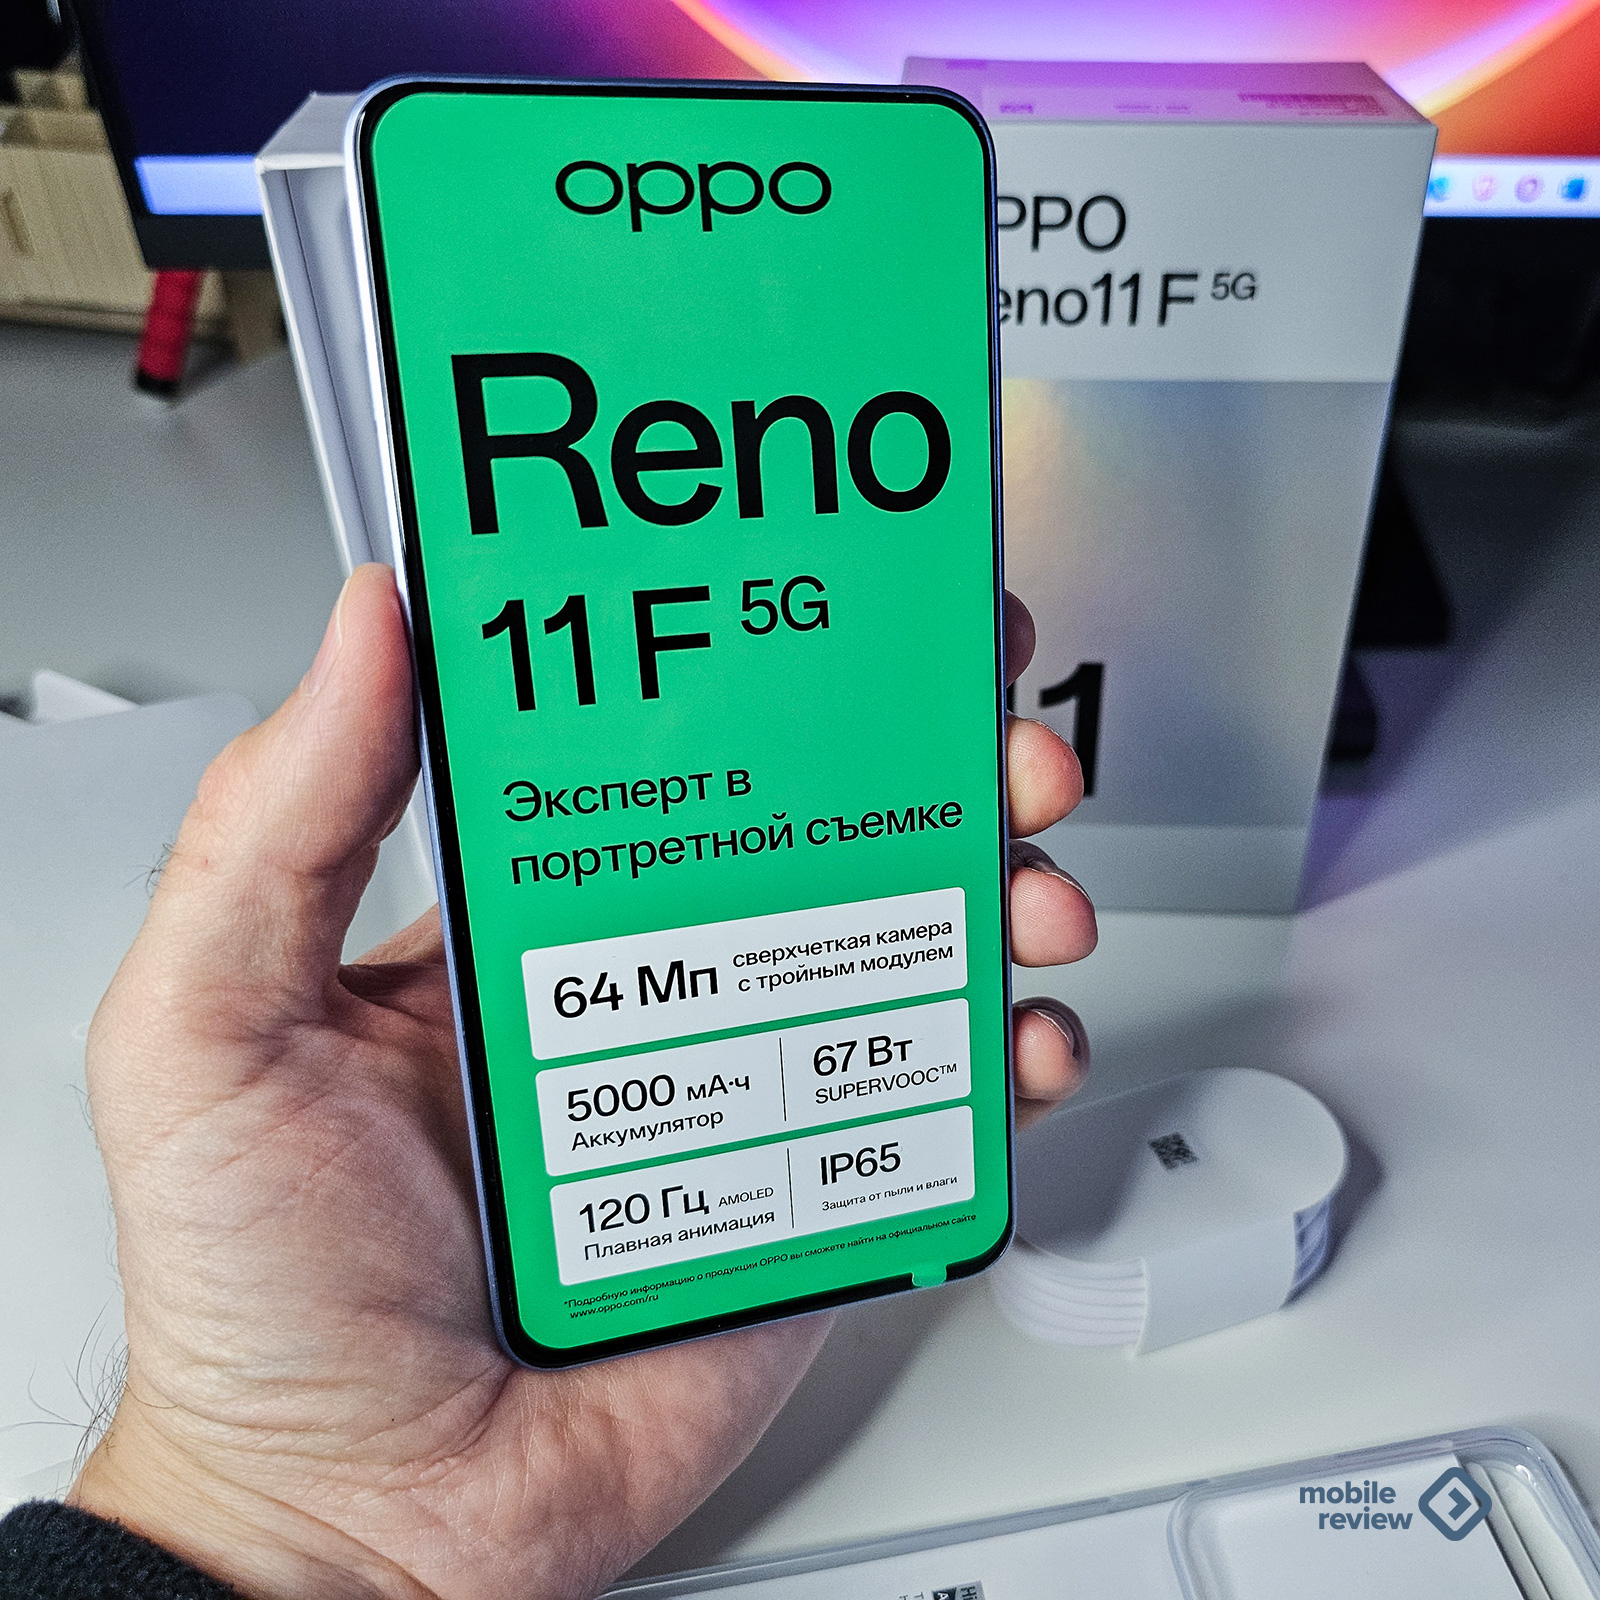 Обзор Oppo Reno 11F: непременно прочитайте, чтобы понять, что происходит с Android-смартфонами